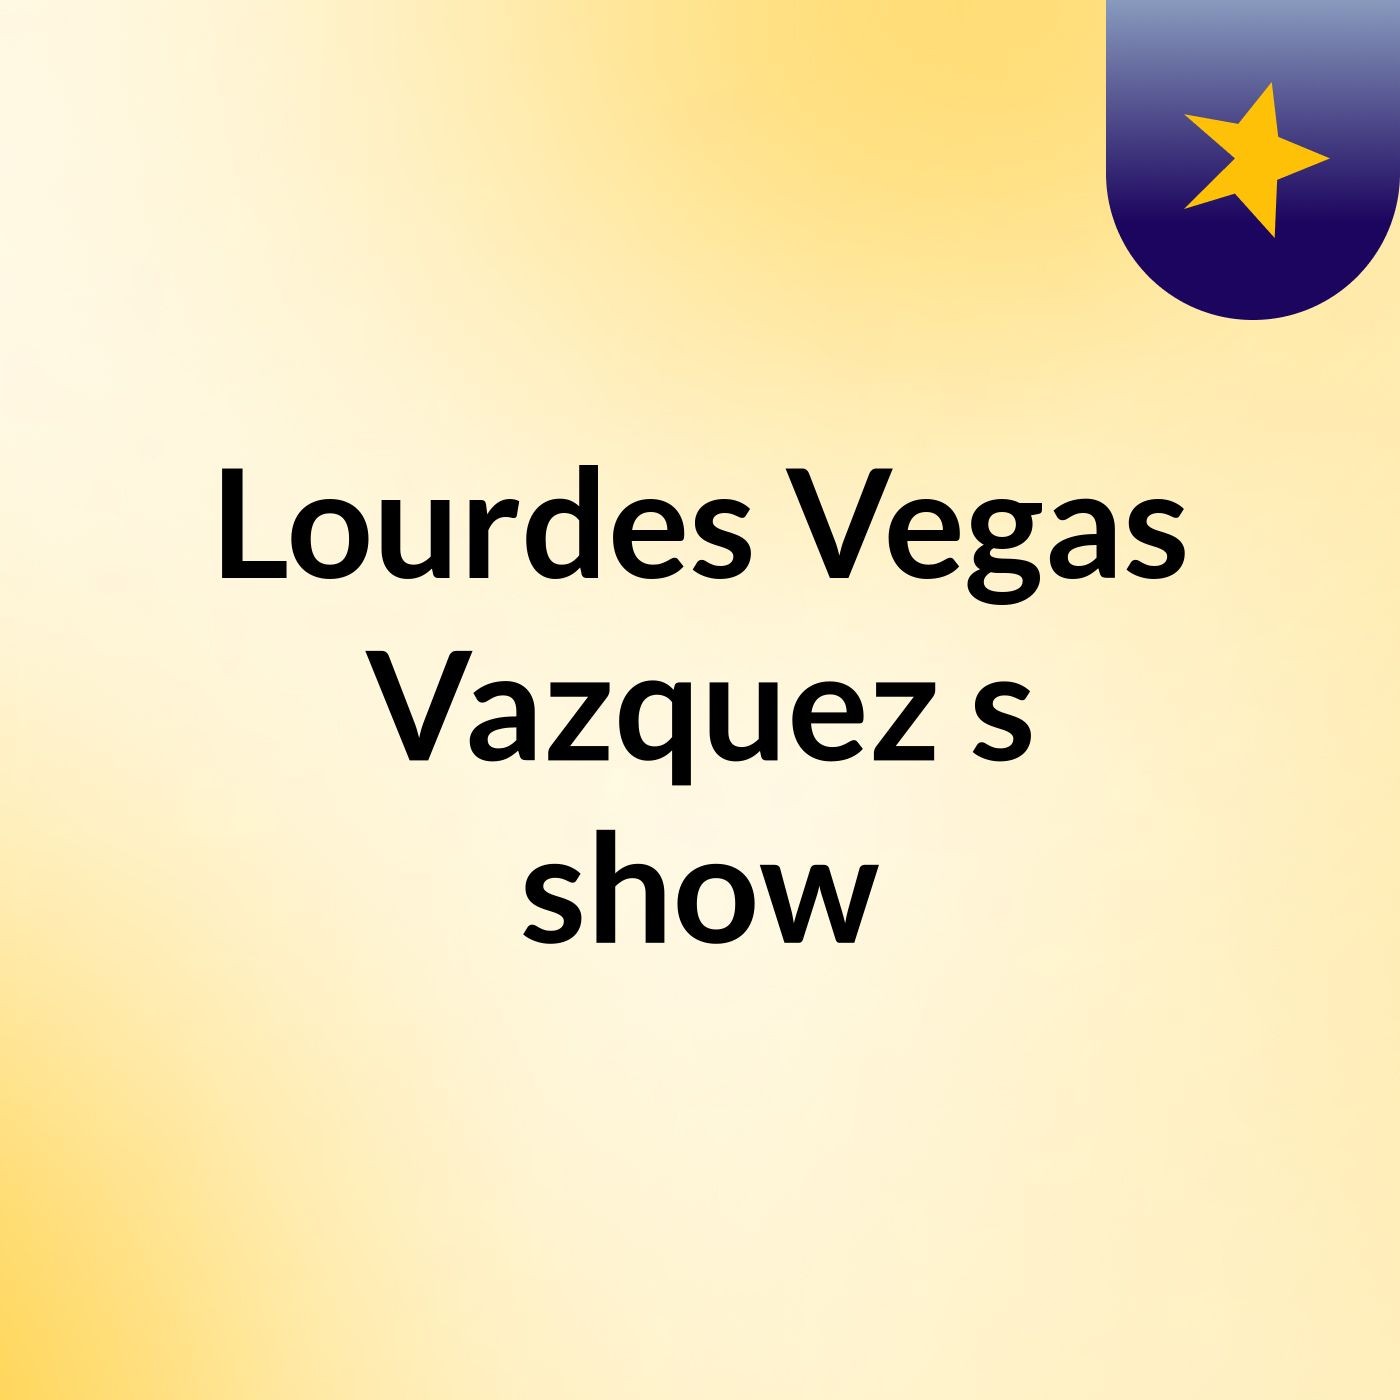 Lourdes Vegas Vazquez's show